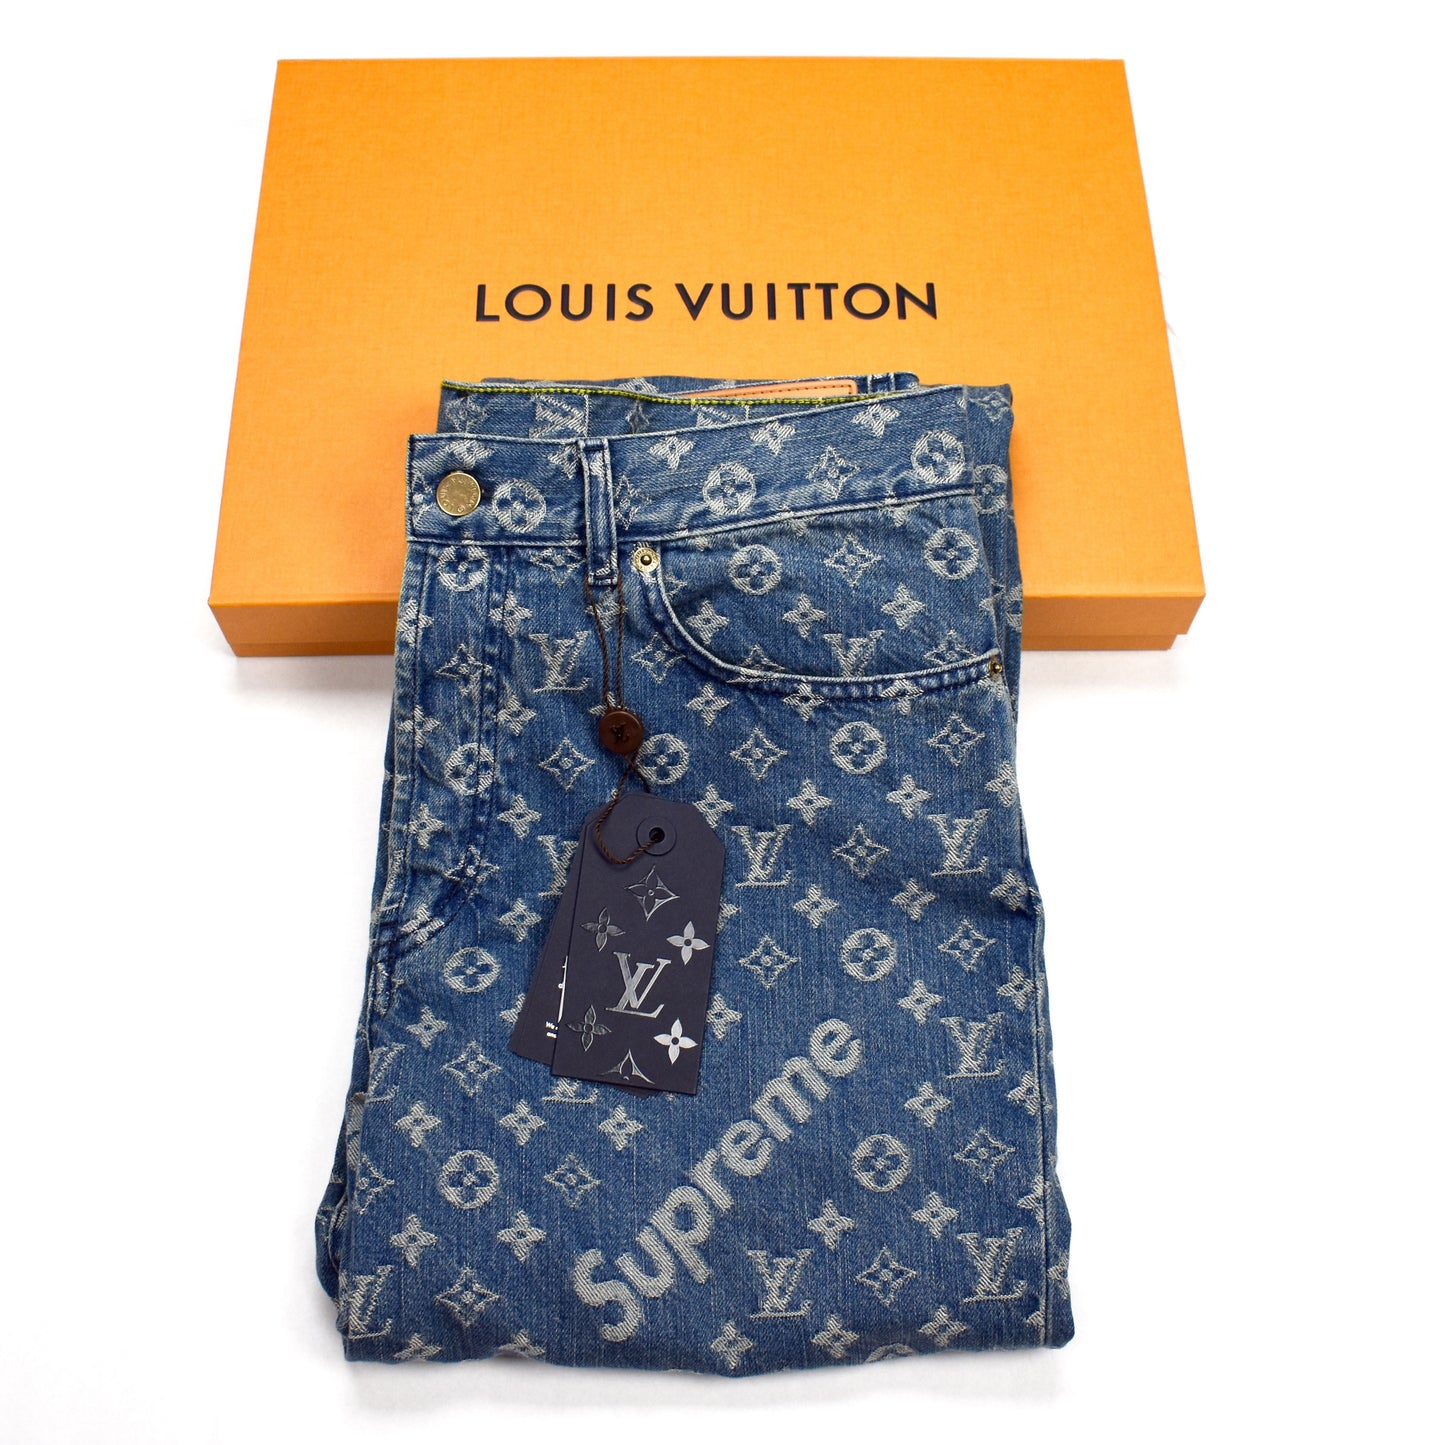 Louis Vuitton x Supreme 2017 Overalls - Blue, 13 Rise Jeans